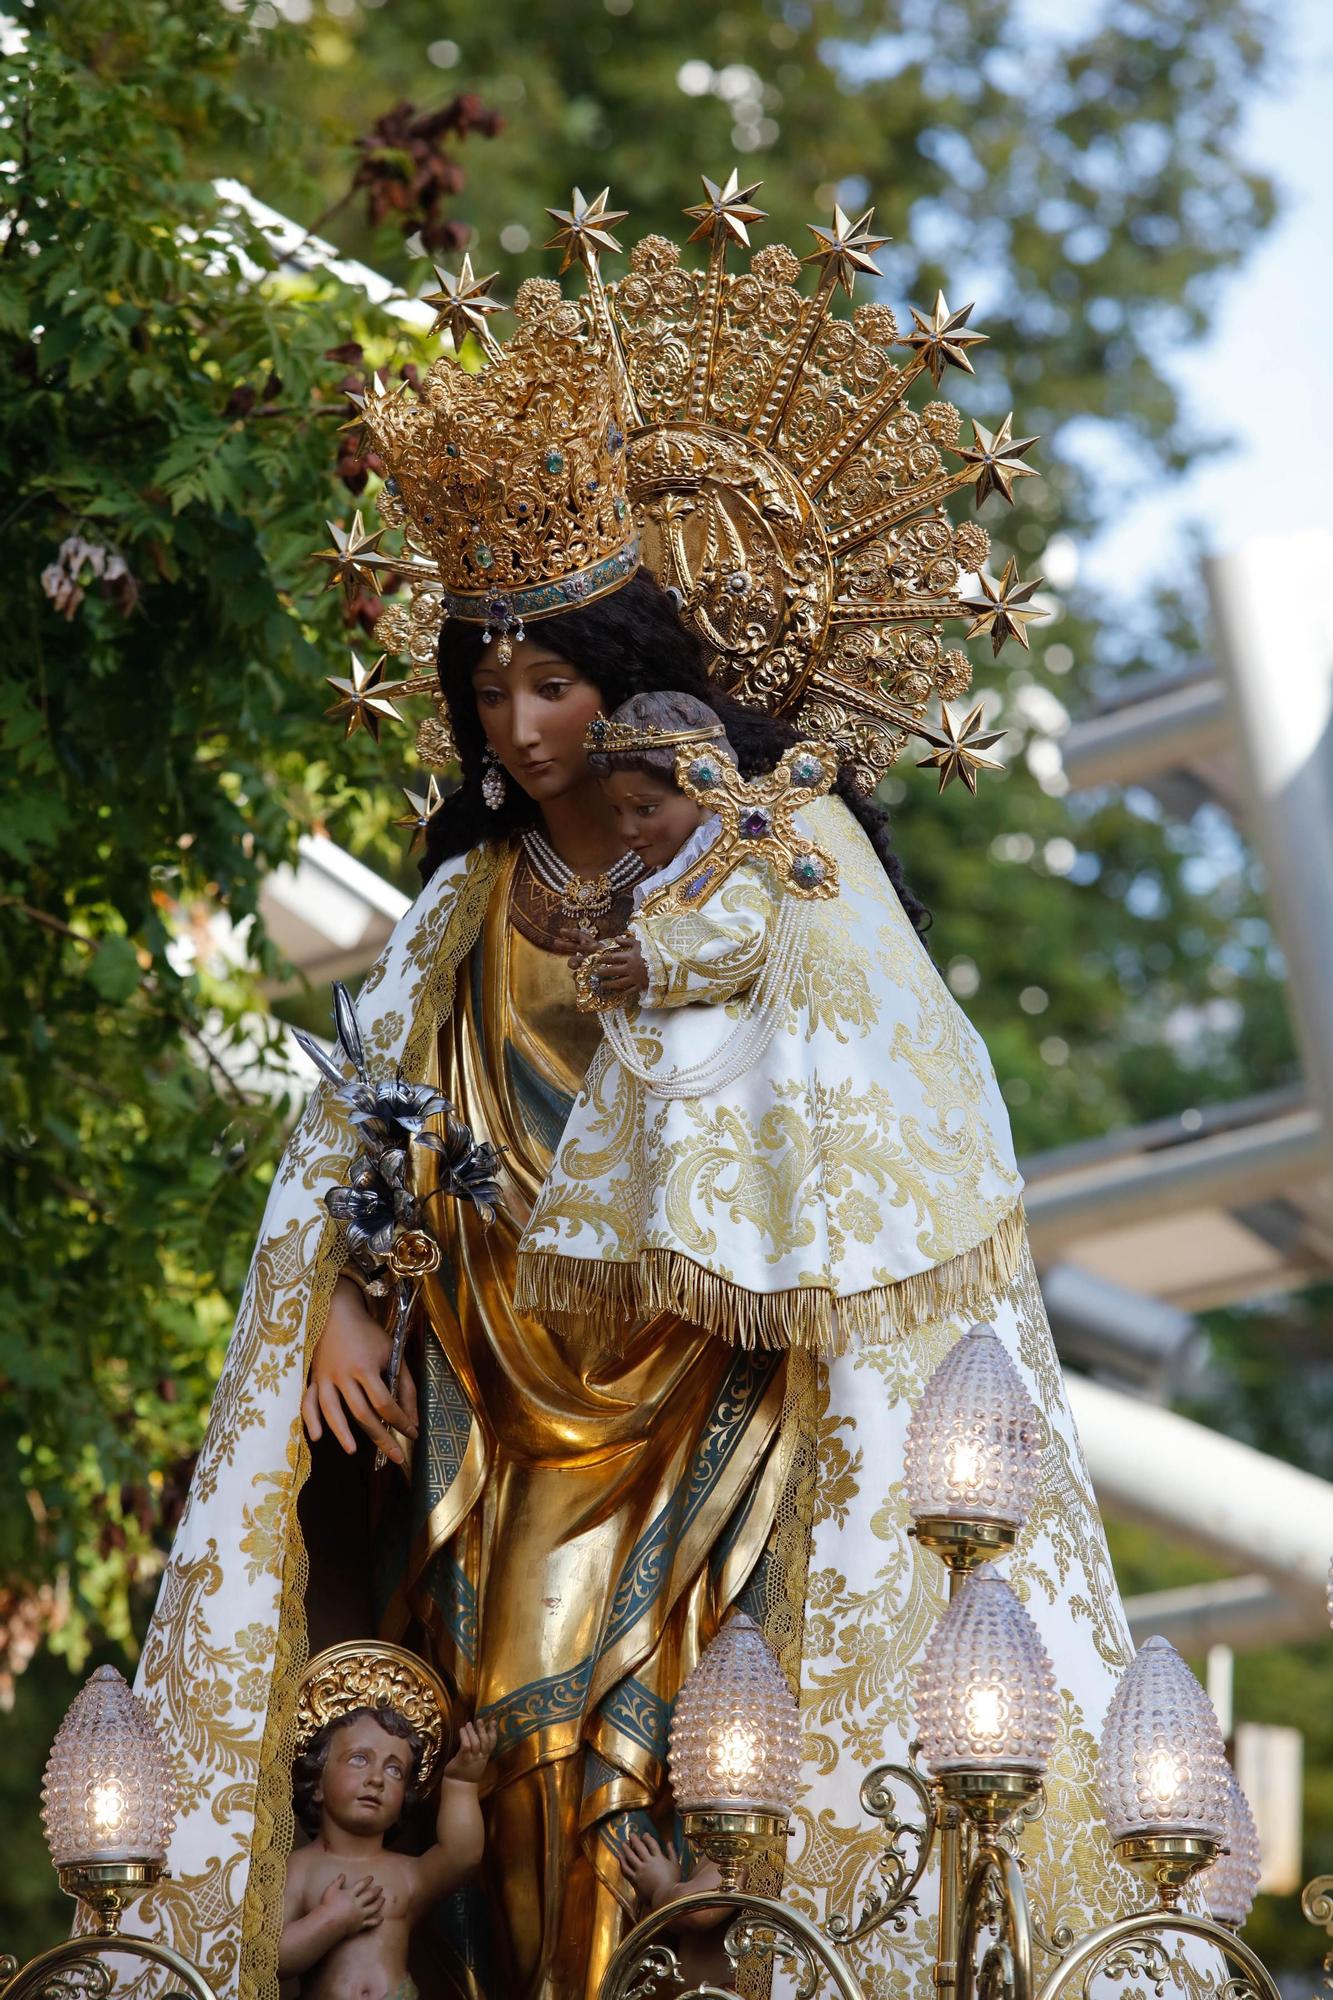 Mira las imágenes de la procesión de la parroquia de Santa Creu